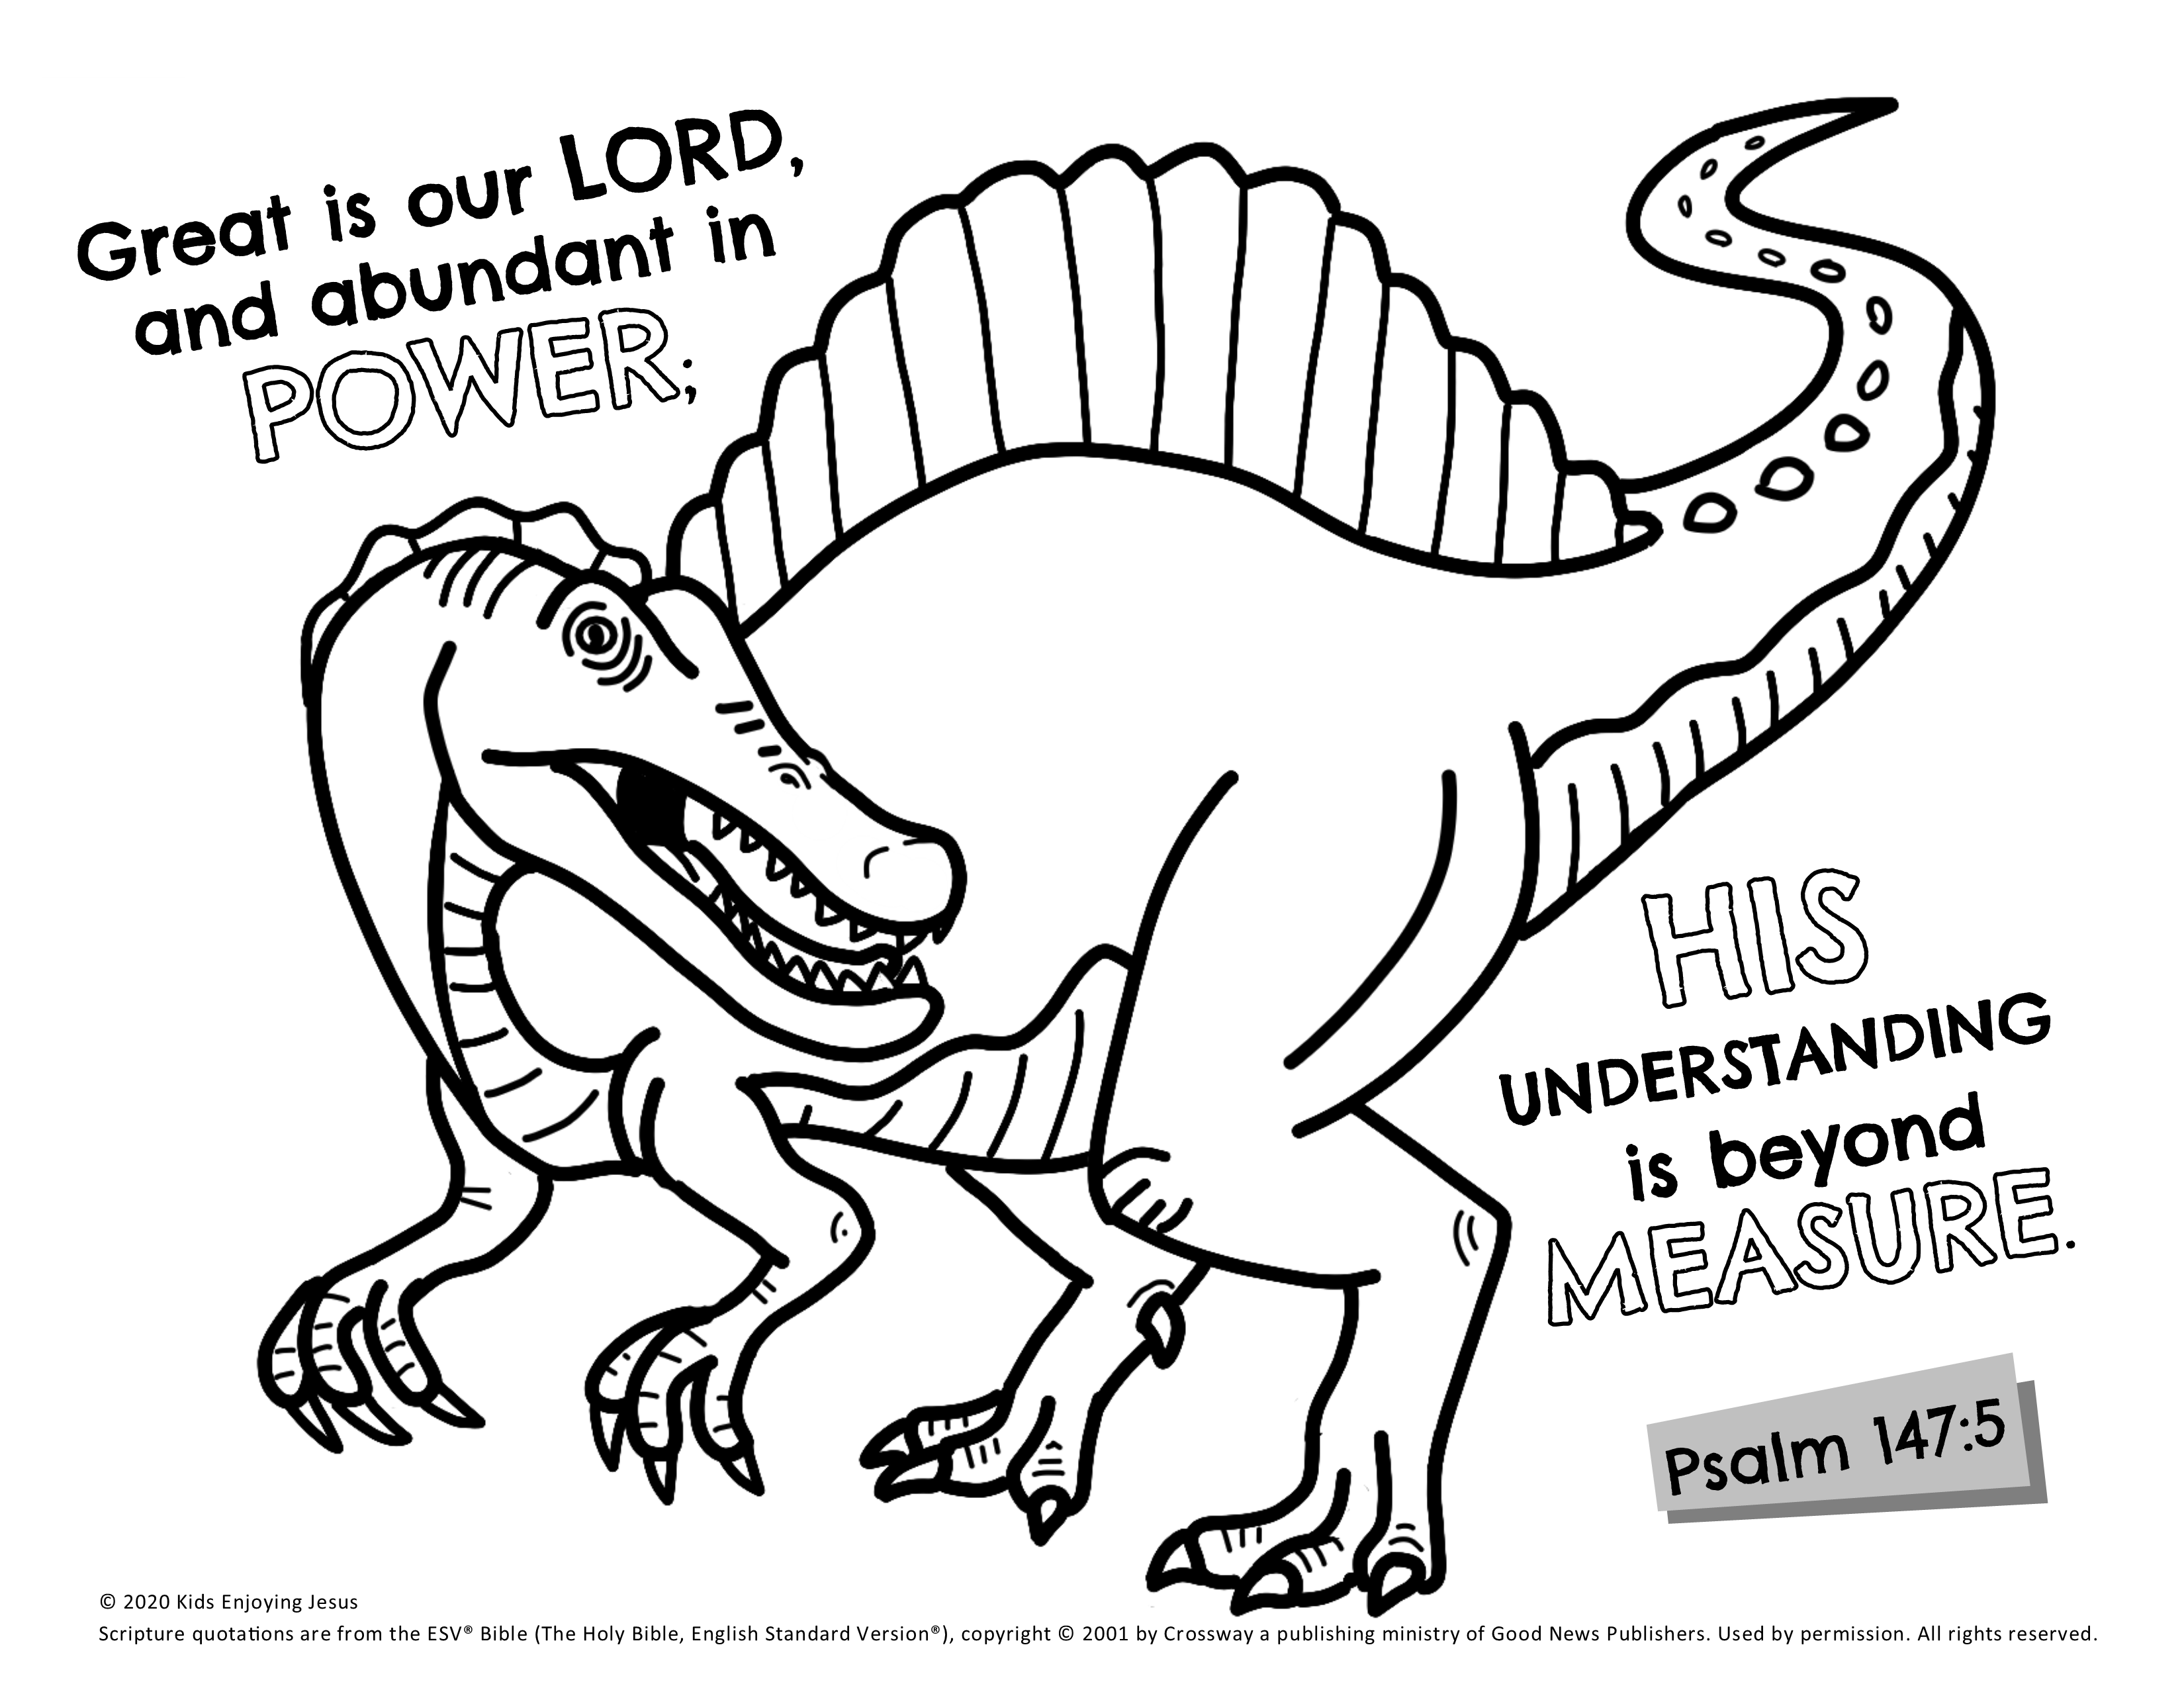 Spinosaurus coloring page â kids enjoying jesus